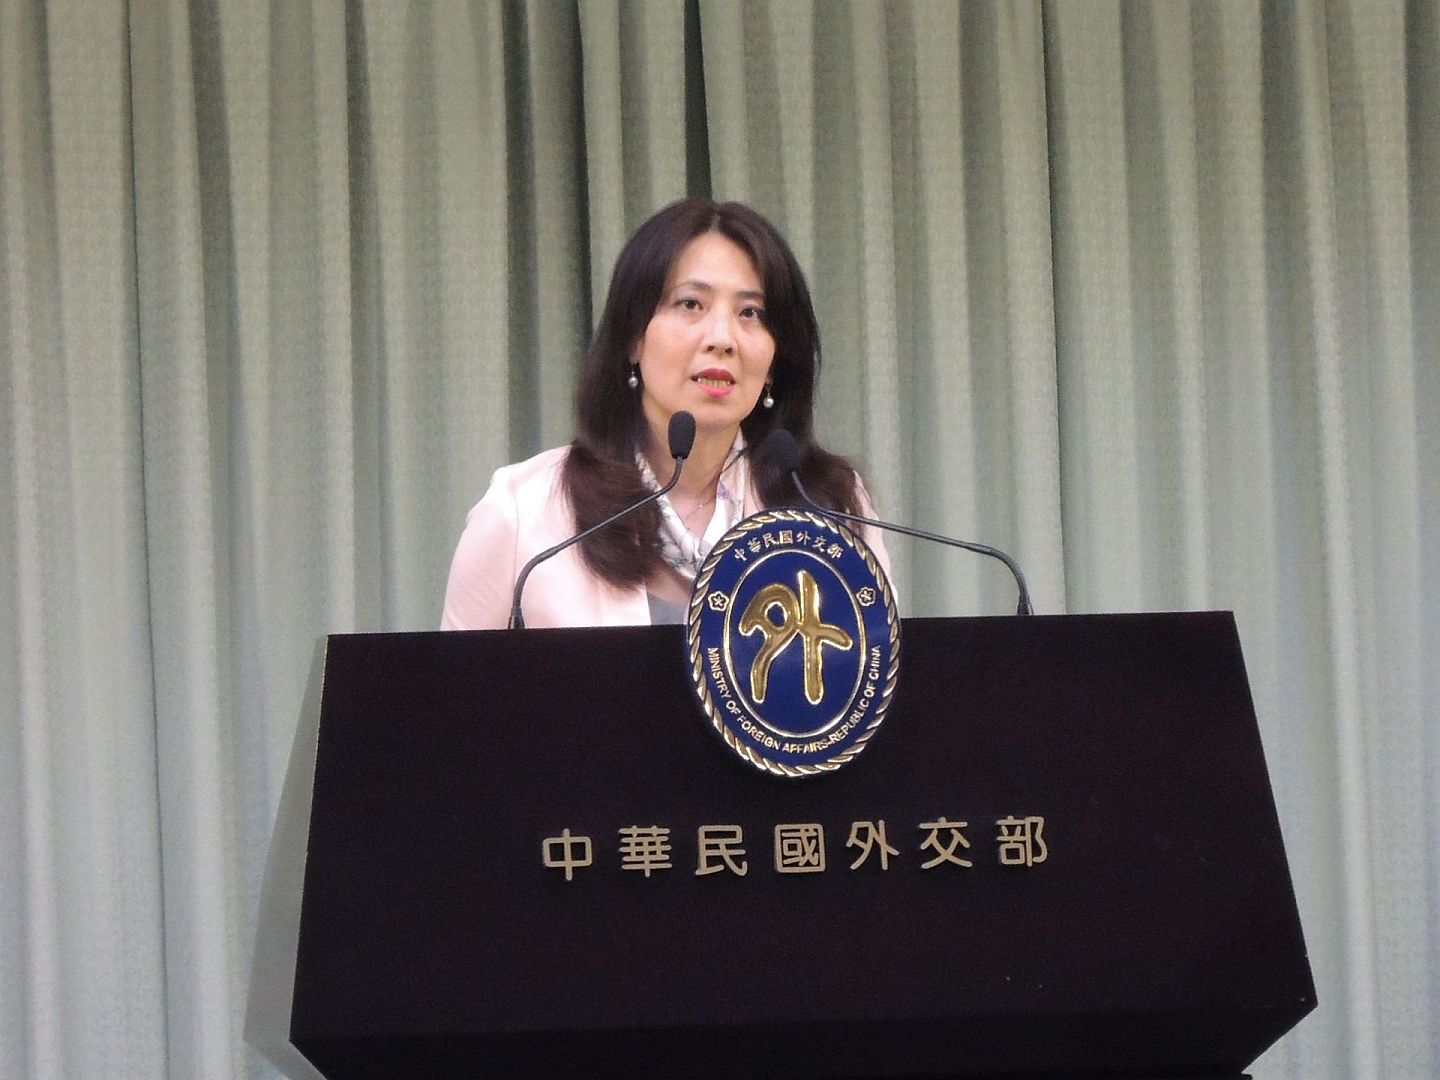 民进党政府表示友台法案证明台美关系良好与稳固。图为台湾外交部发言人欧江安。（多维新闻）